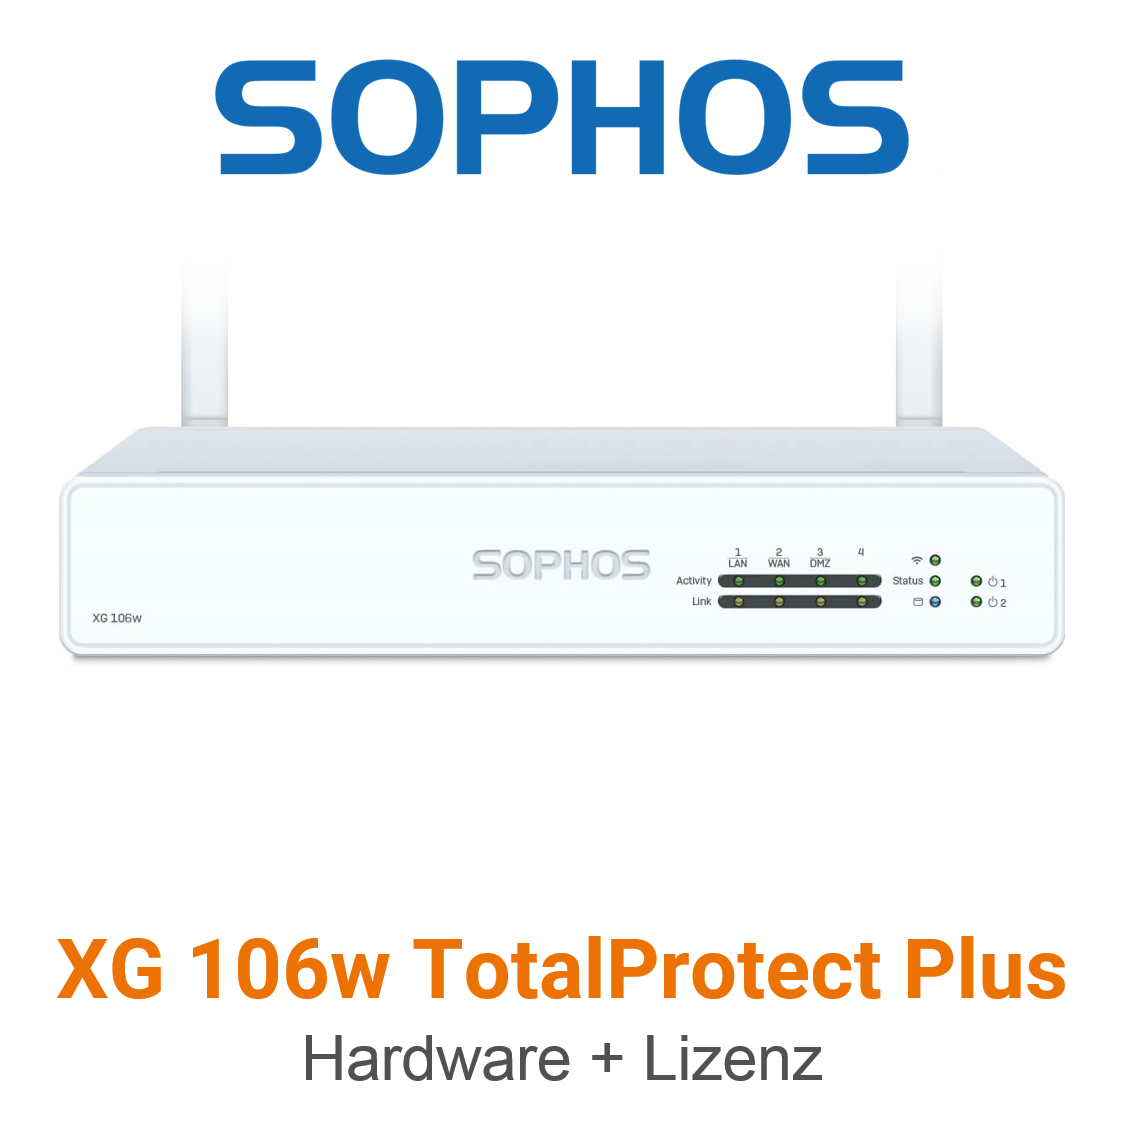 Sophos XG 106w TotalProtect Plus Bundle (Hardware + Lizenz) (End of Sale/Life)